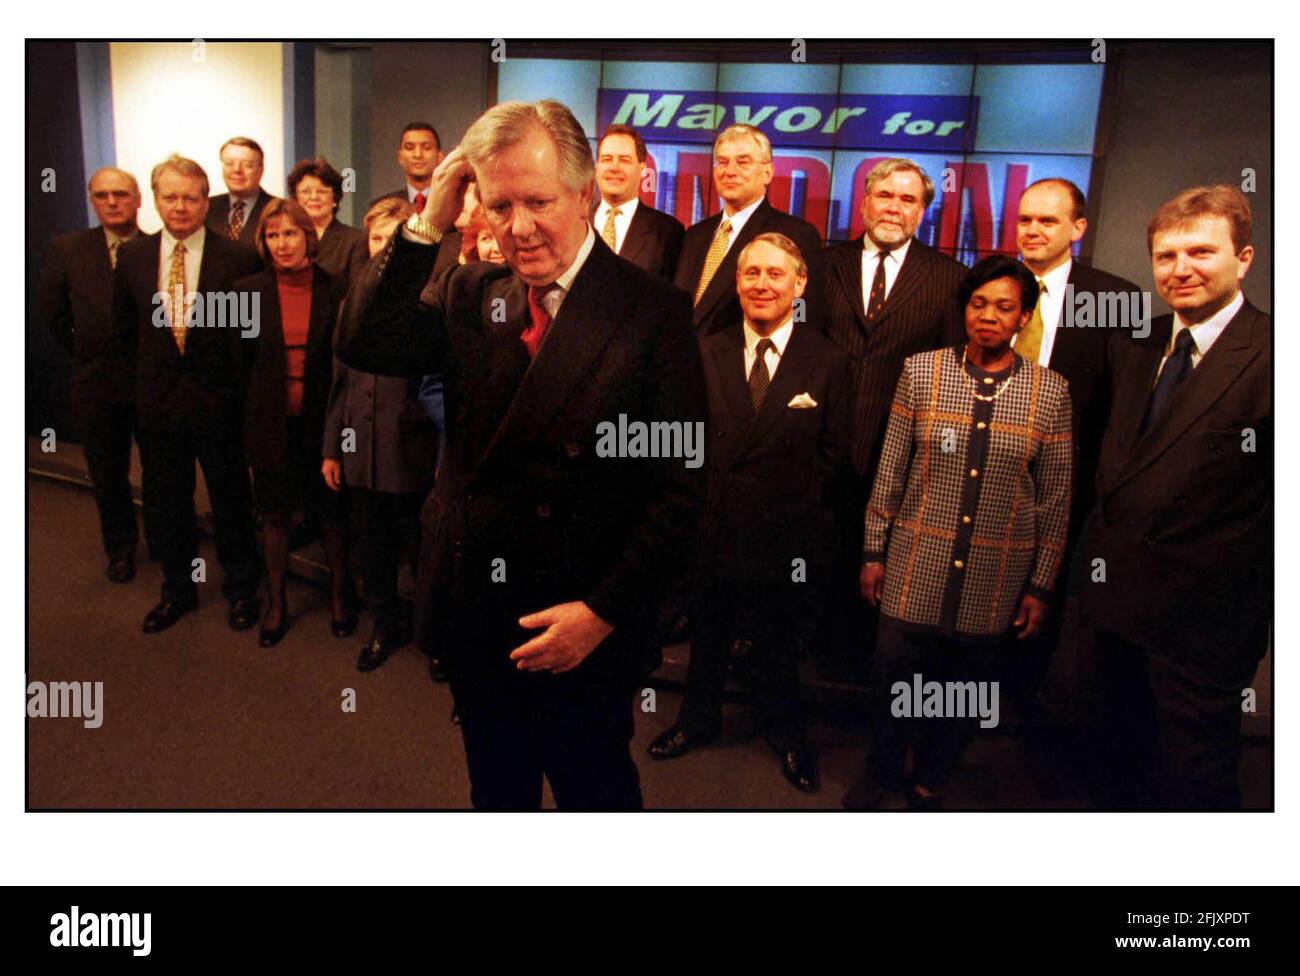 Le député de Steven Norris février 2000 dirige les candidats à l'Assemblée de circonscription pendant un Appel photo pour faire rebondir la liste des conservateurs L'Assemblée du Grand Londres Banque D'Images